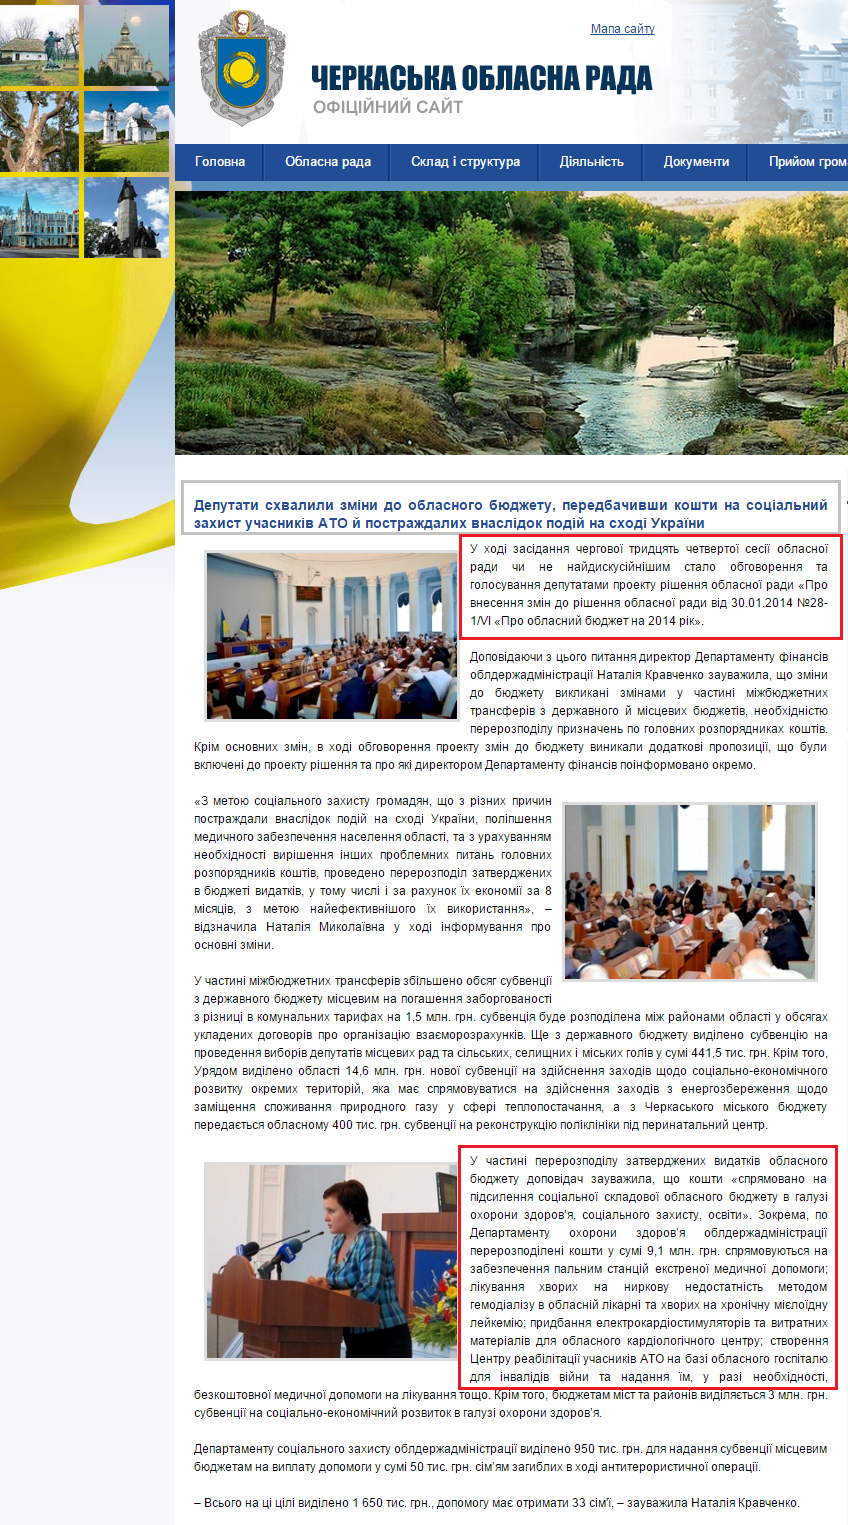 http://oblradack.gov.ua/novini/2581-deputati-shvalili-zmni-do-oblasnogo-byudzhetu-peredbachivshi-koshti-na-socalniy-zahist-uchasnikv-ato-y-postrazhdalih-vnasldok-pody-na-shod-ukrayini.html